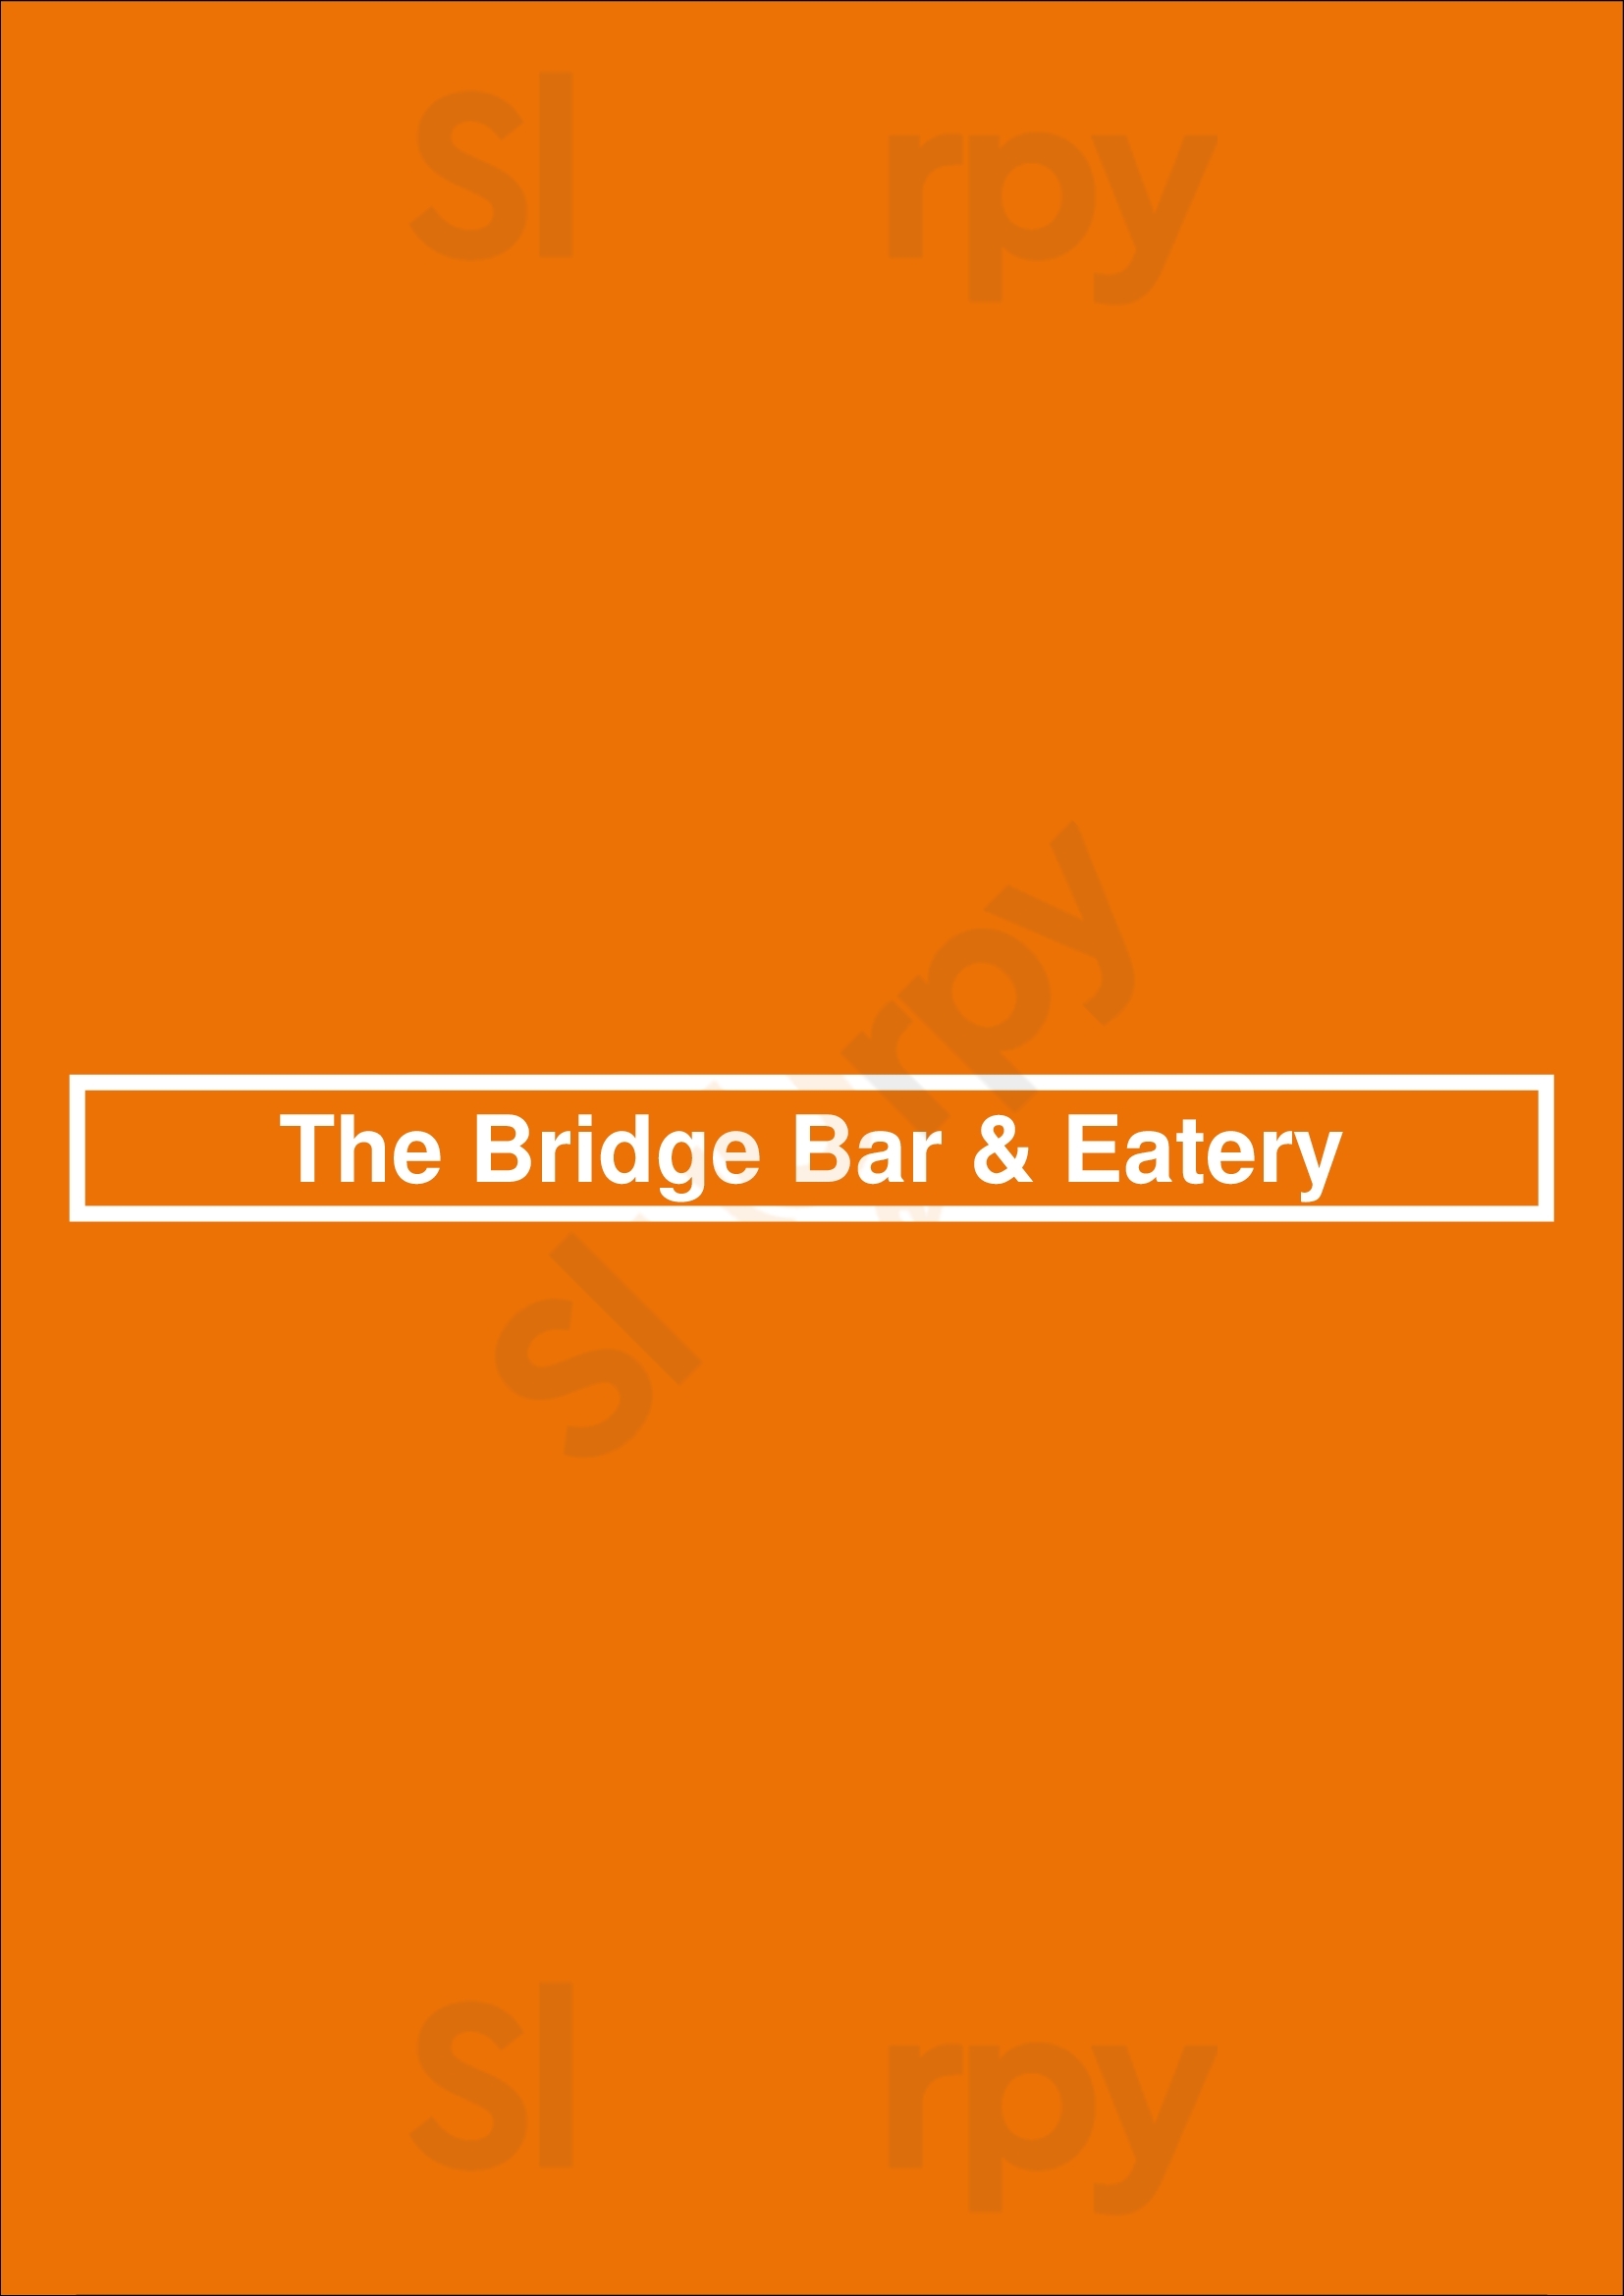 The Bridge Bar & Eatery Dublin Menu - 1